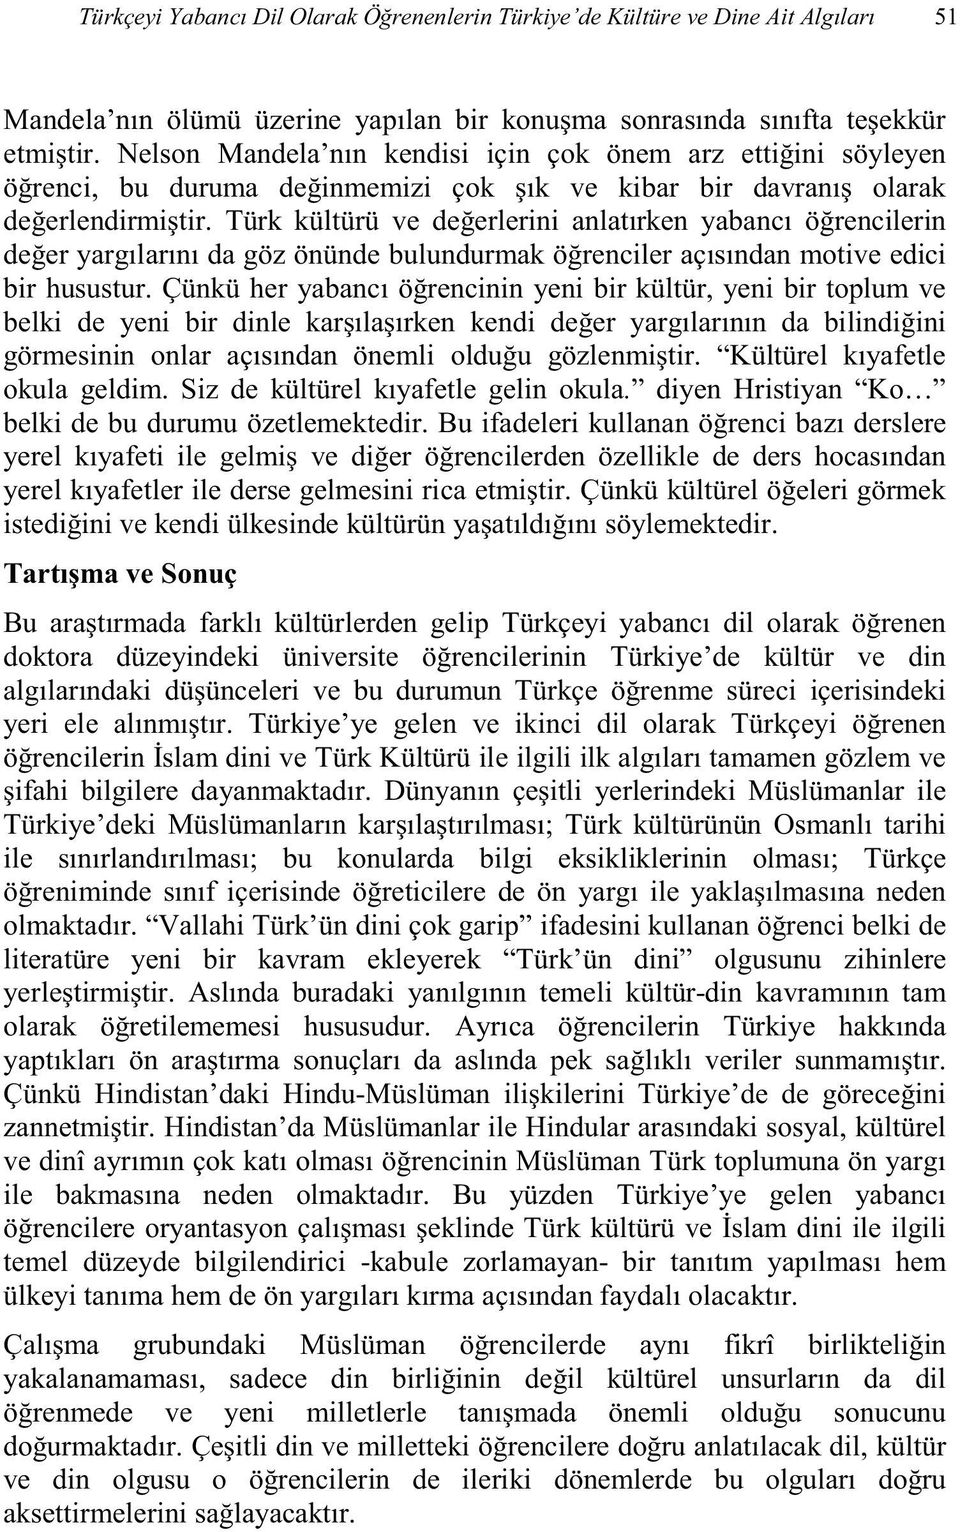 arkl ve din çerisindeki Türkiye ye gelen ve ikinci dil o dini ve Türkiye deki Müslüma ihi Vallahi Türk ün dini çok garip literatüre